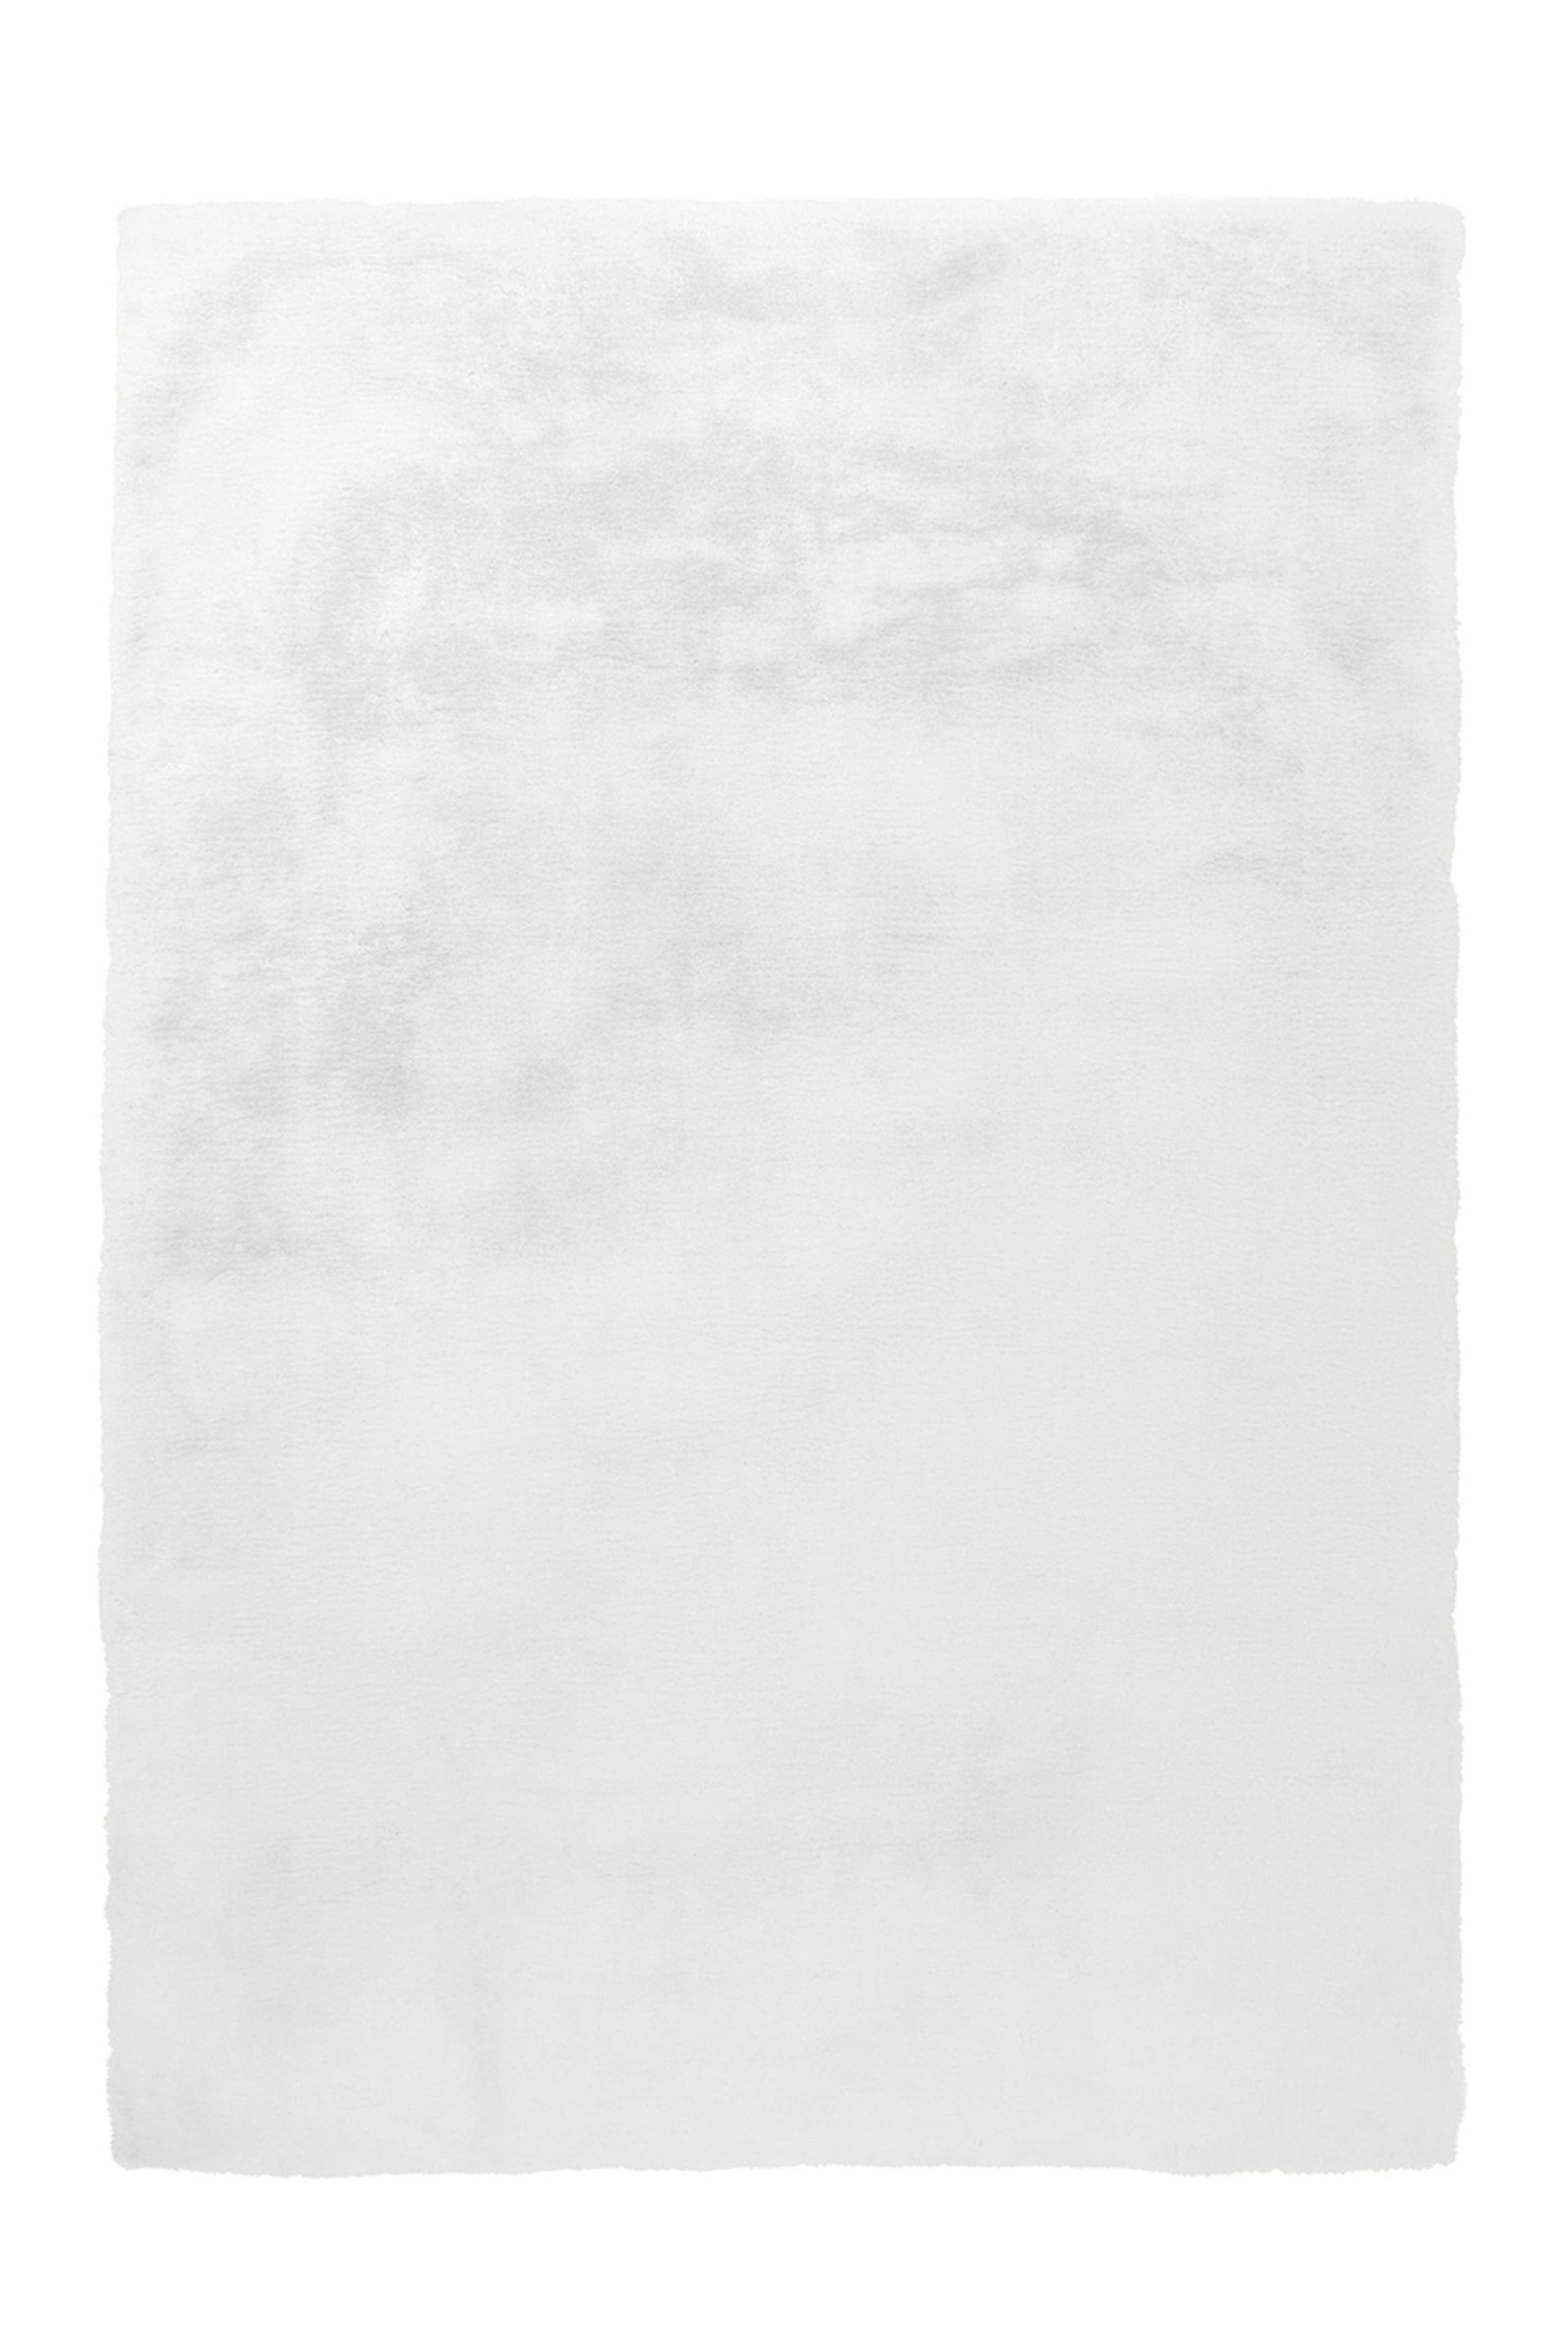 Teppich Rabbit 100 Weiß  180 cm x 280 cm